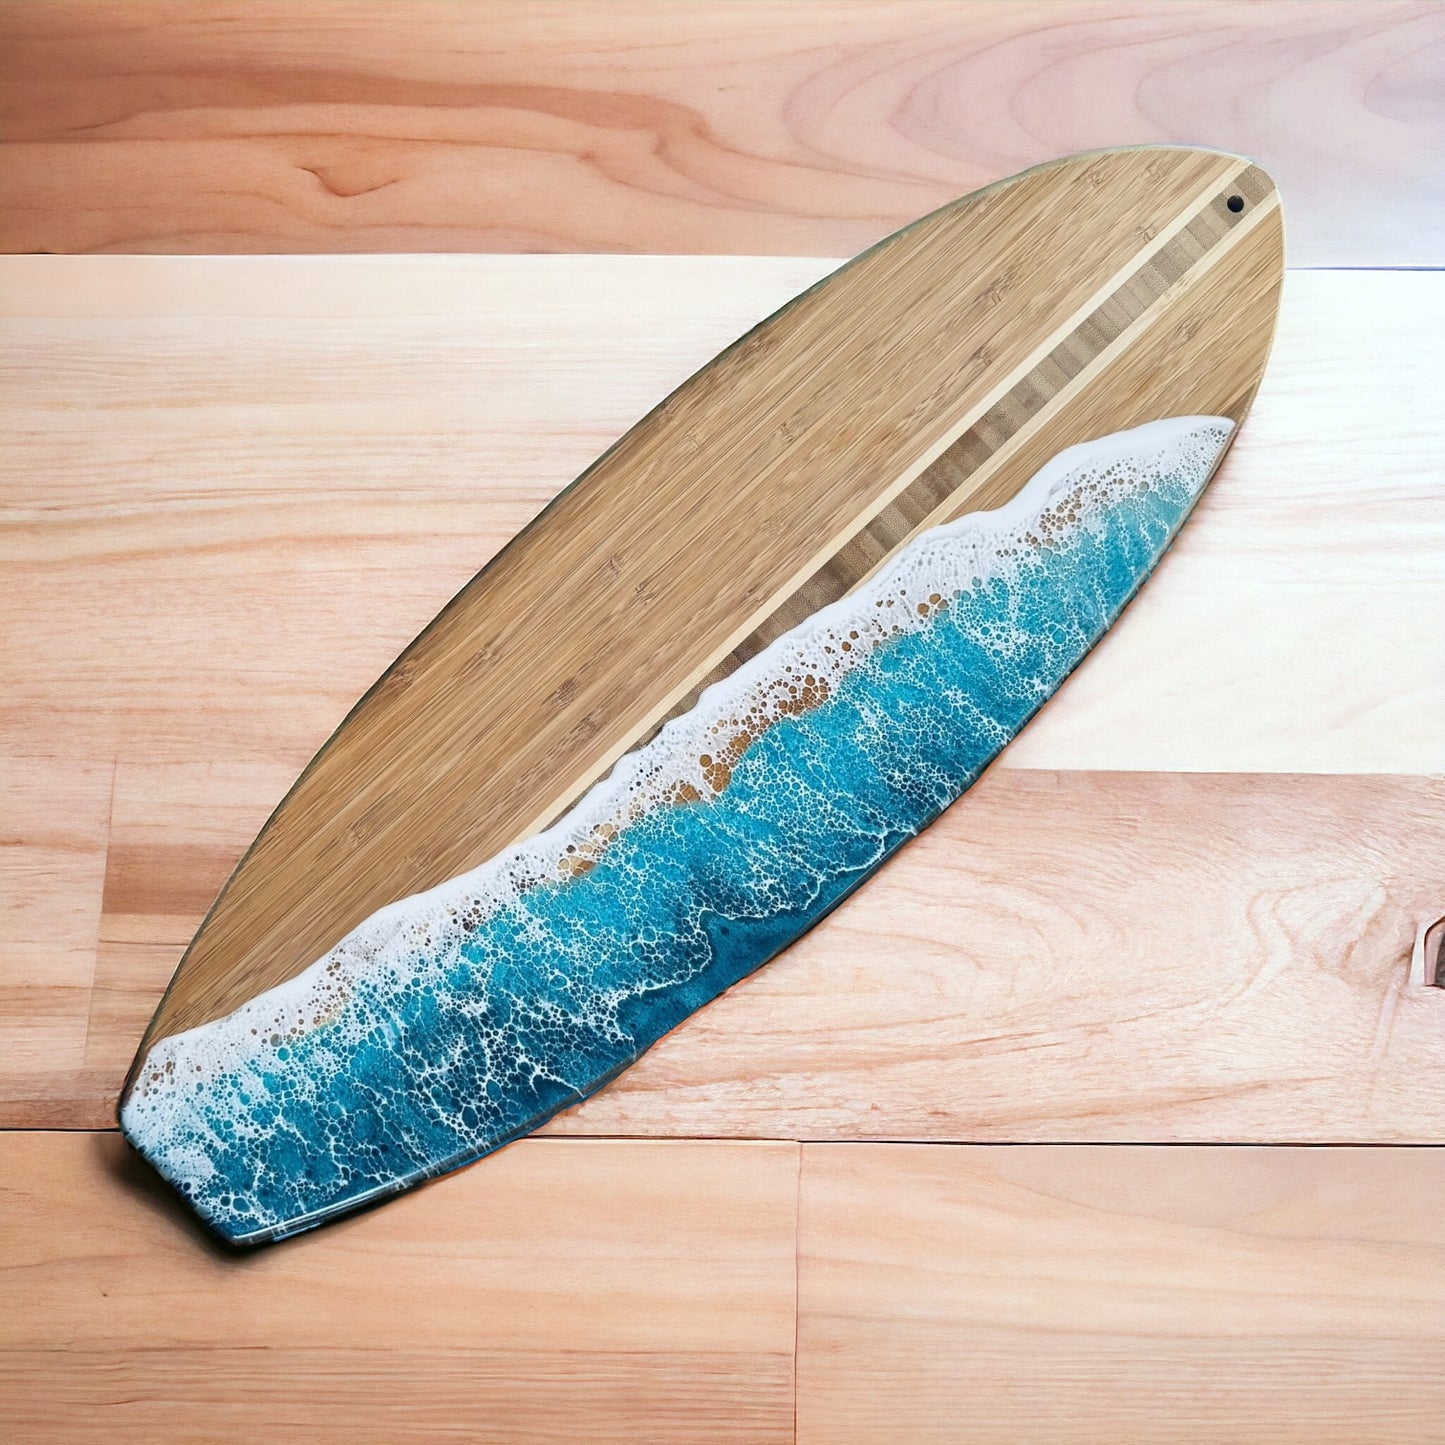 Surfboard Charcuterie Board